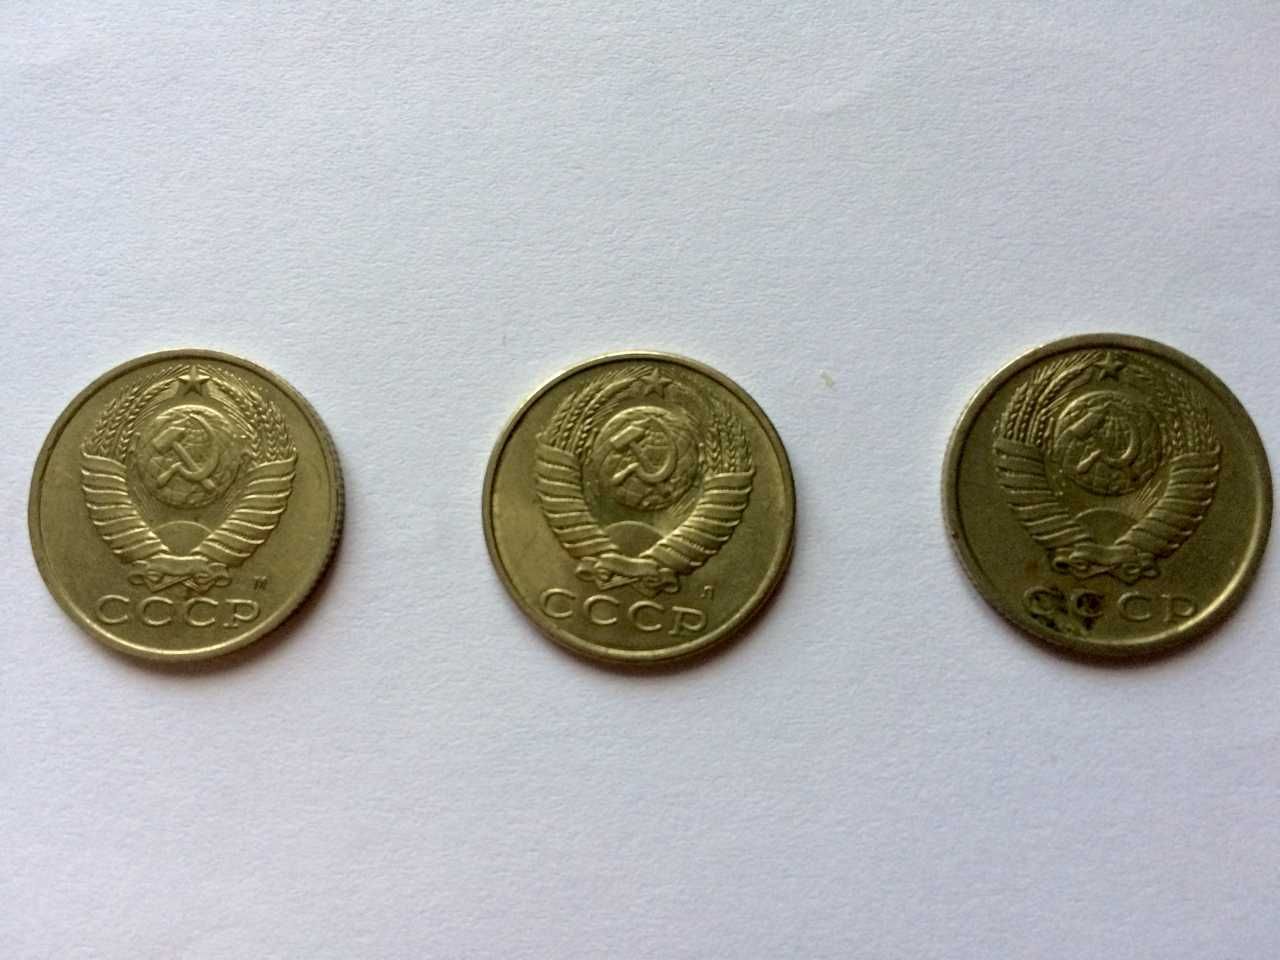 монеты 15 копеек СССР 1980 1991 гг